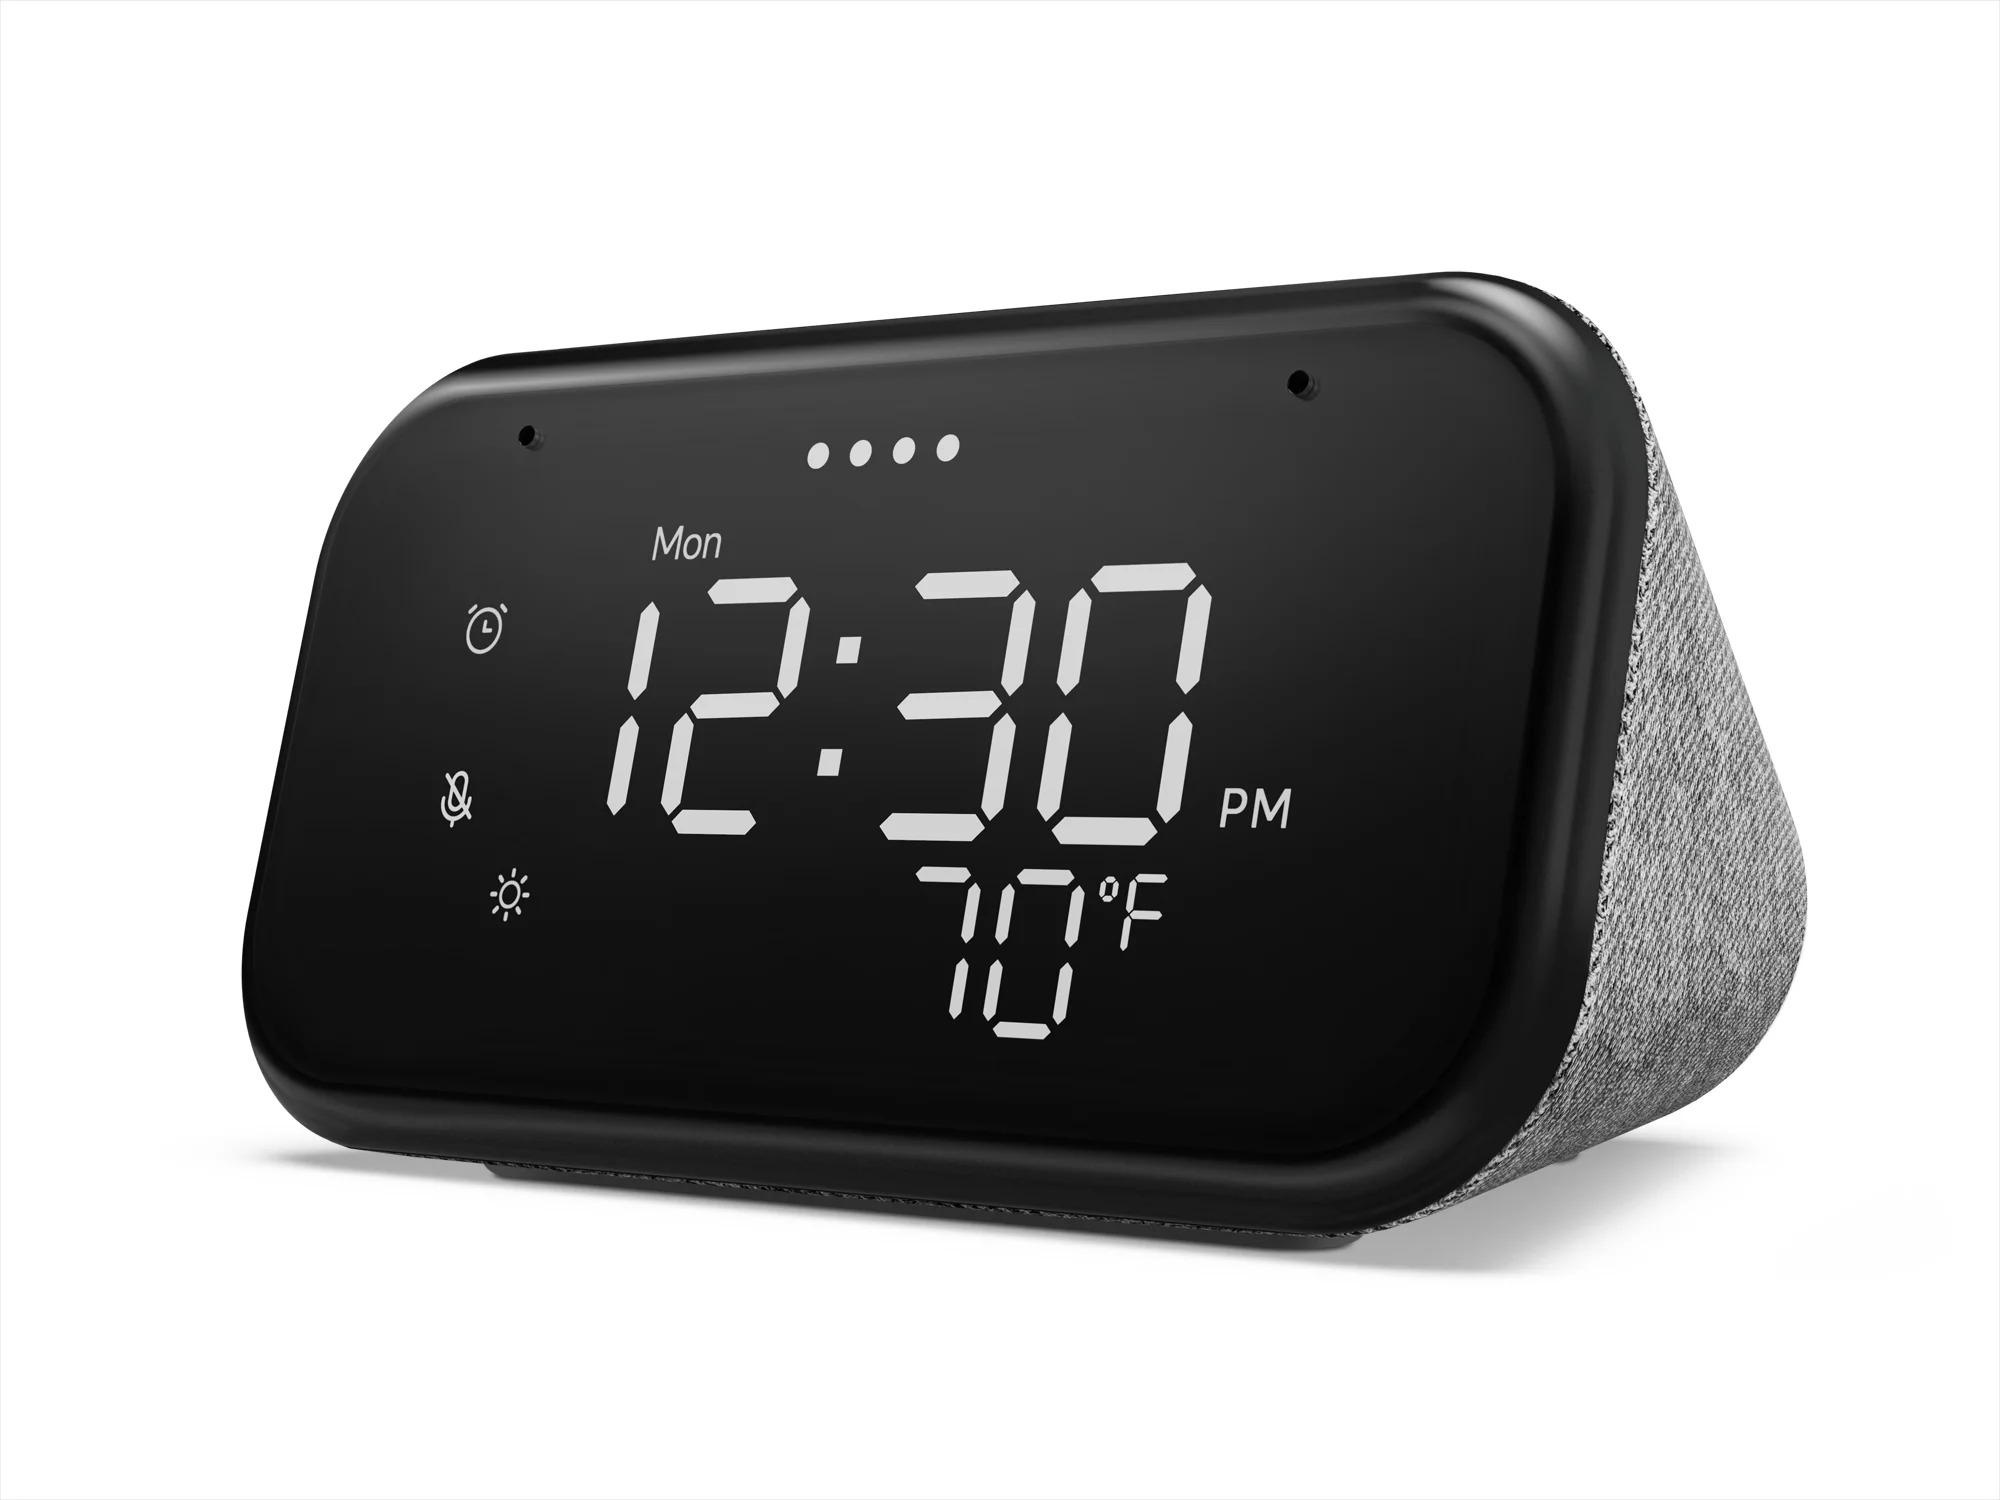 $20 - Lenovo Smart Clock Essential $19.99